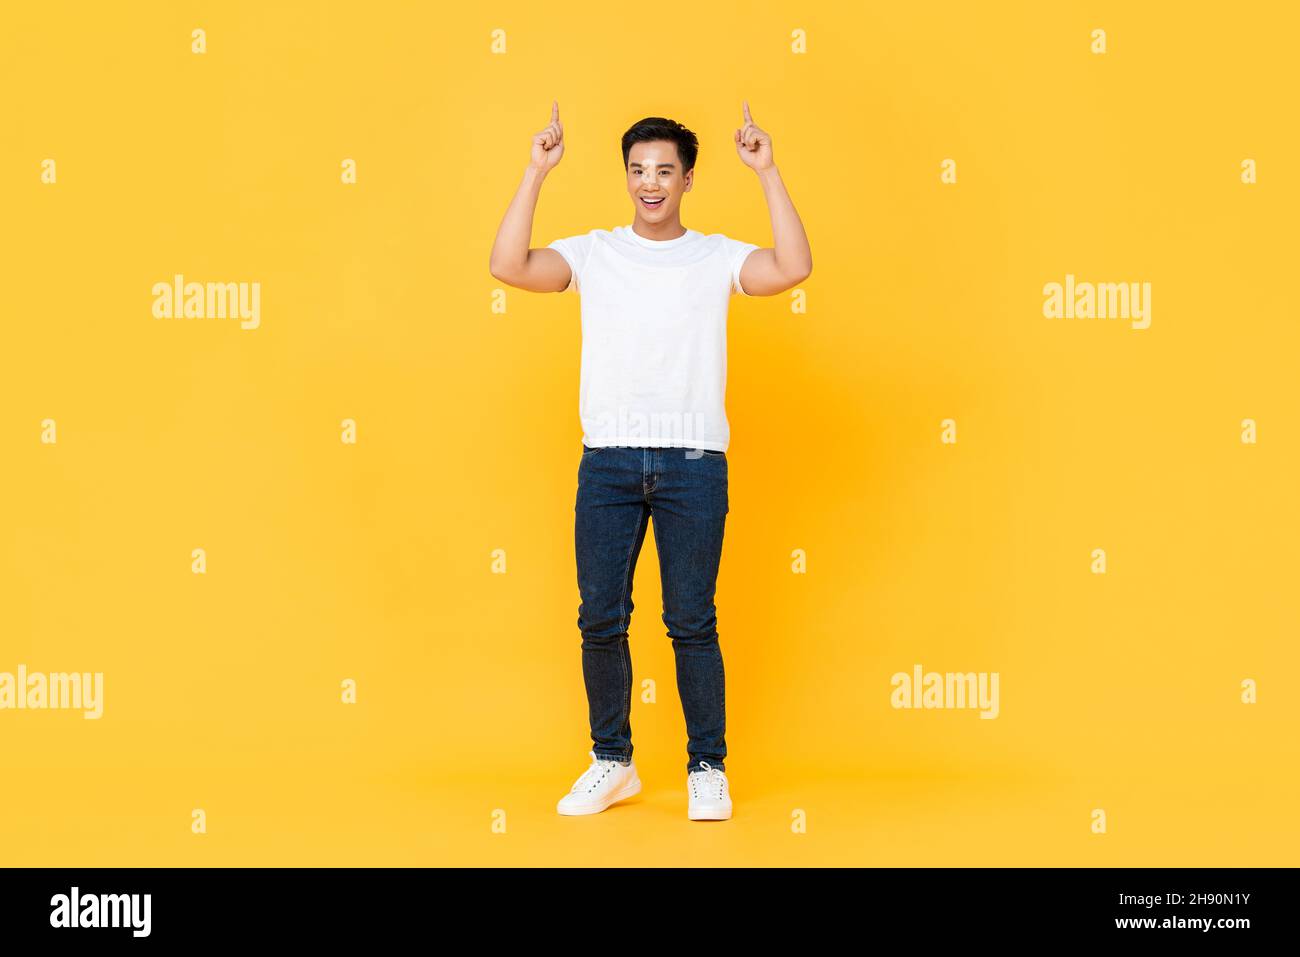 Retrato de cuerpo entero de hombre asiático sonriente y guapo apuntando dos dedos hacia arriba, aislado sobre fondo amarillo de estudio Foto de stock